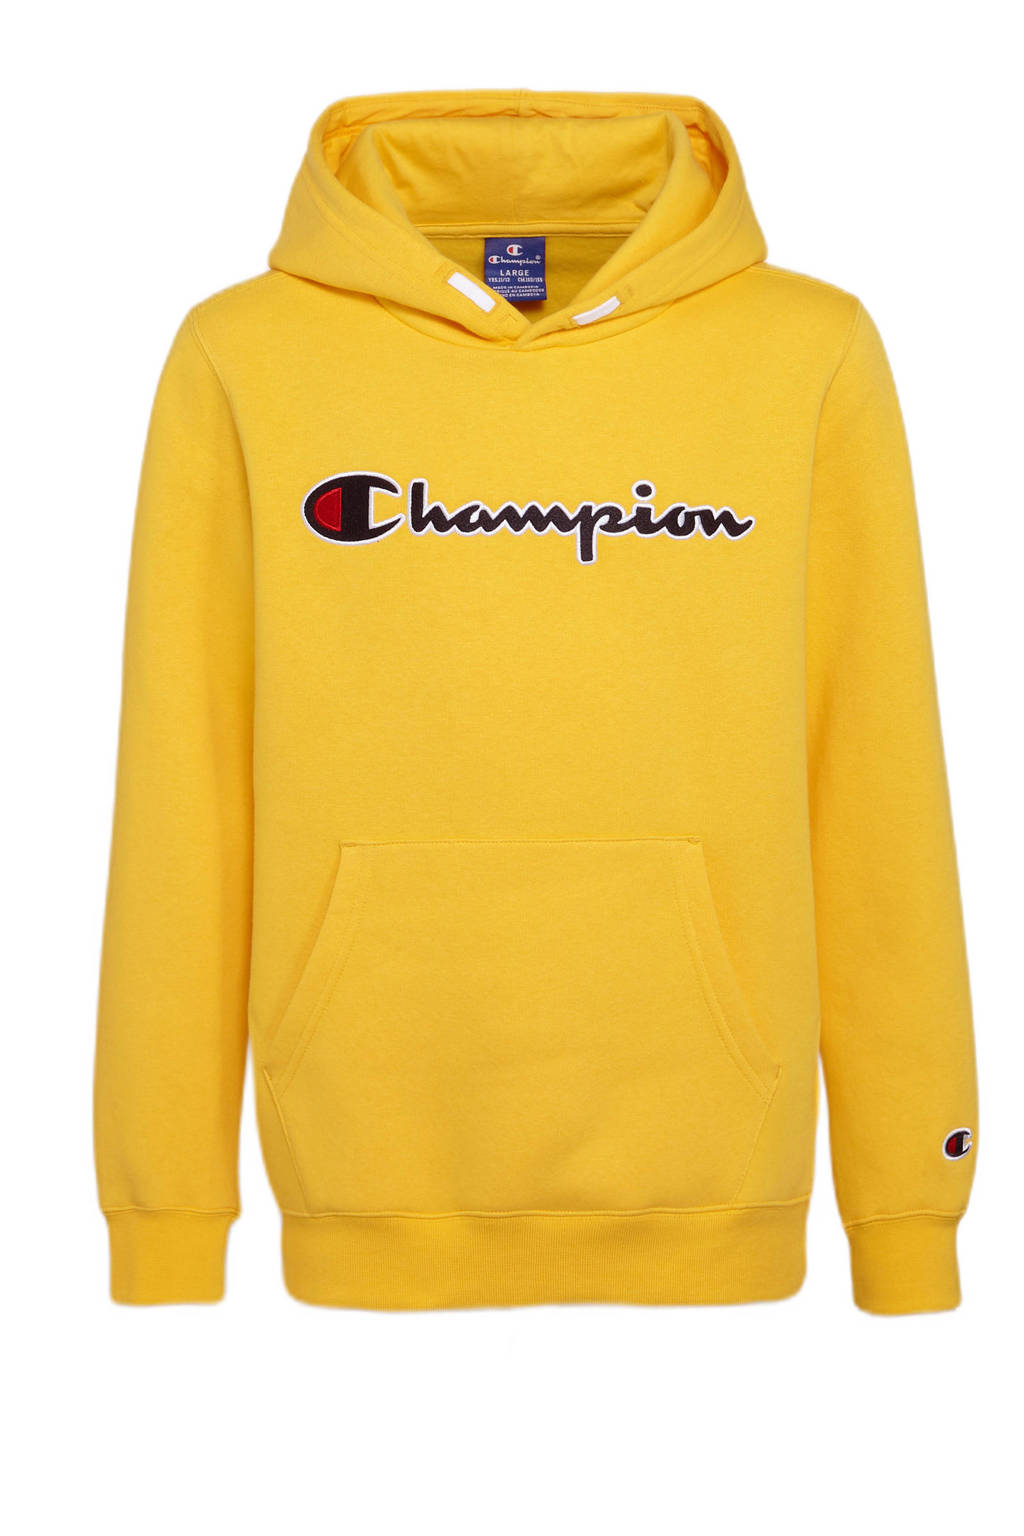 Oh jee converteerbaar Geduld Champion hoodie met logo geel | wehkamp